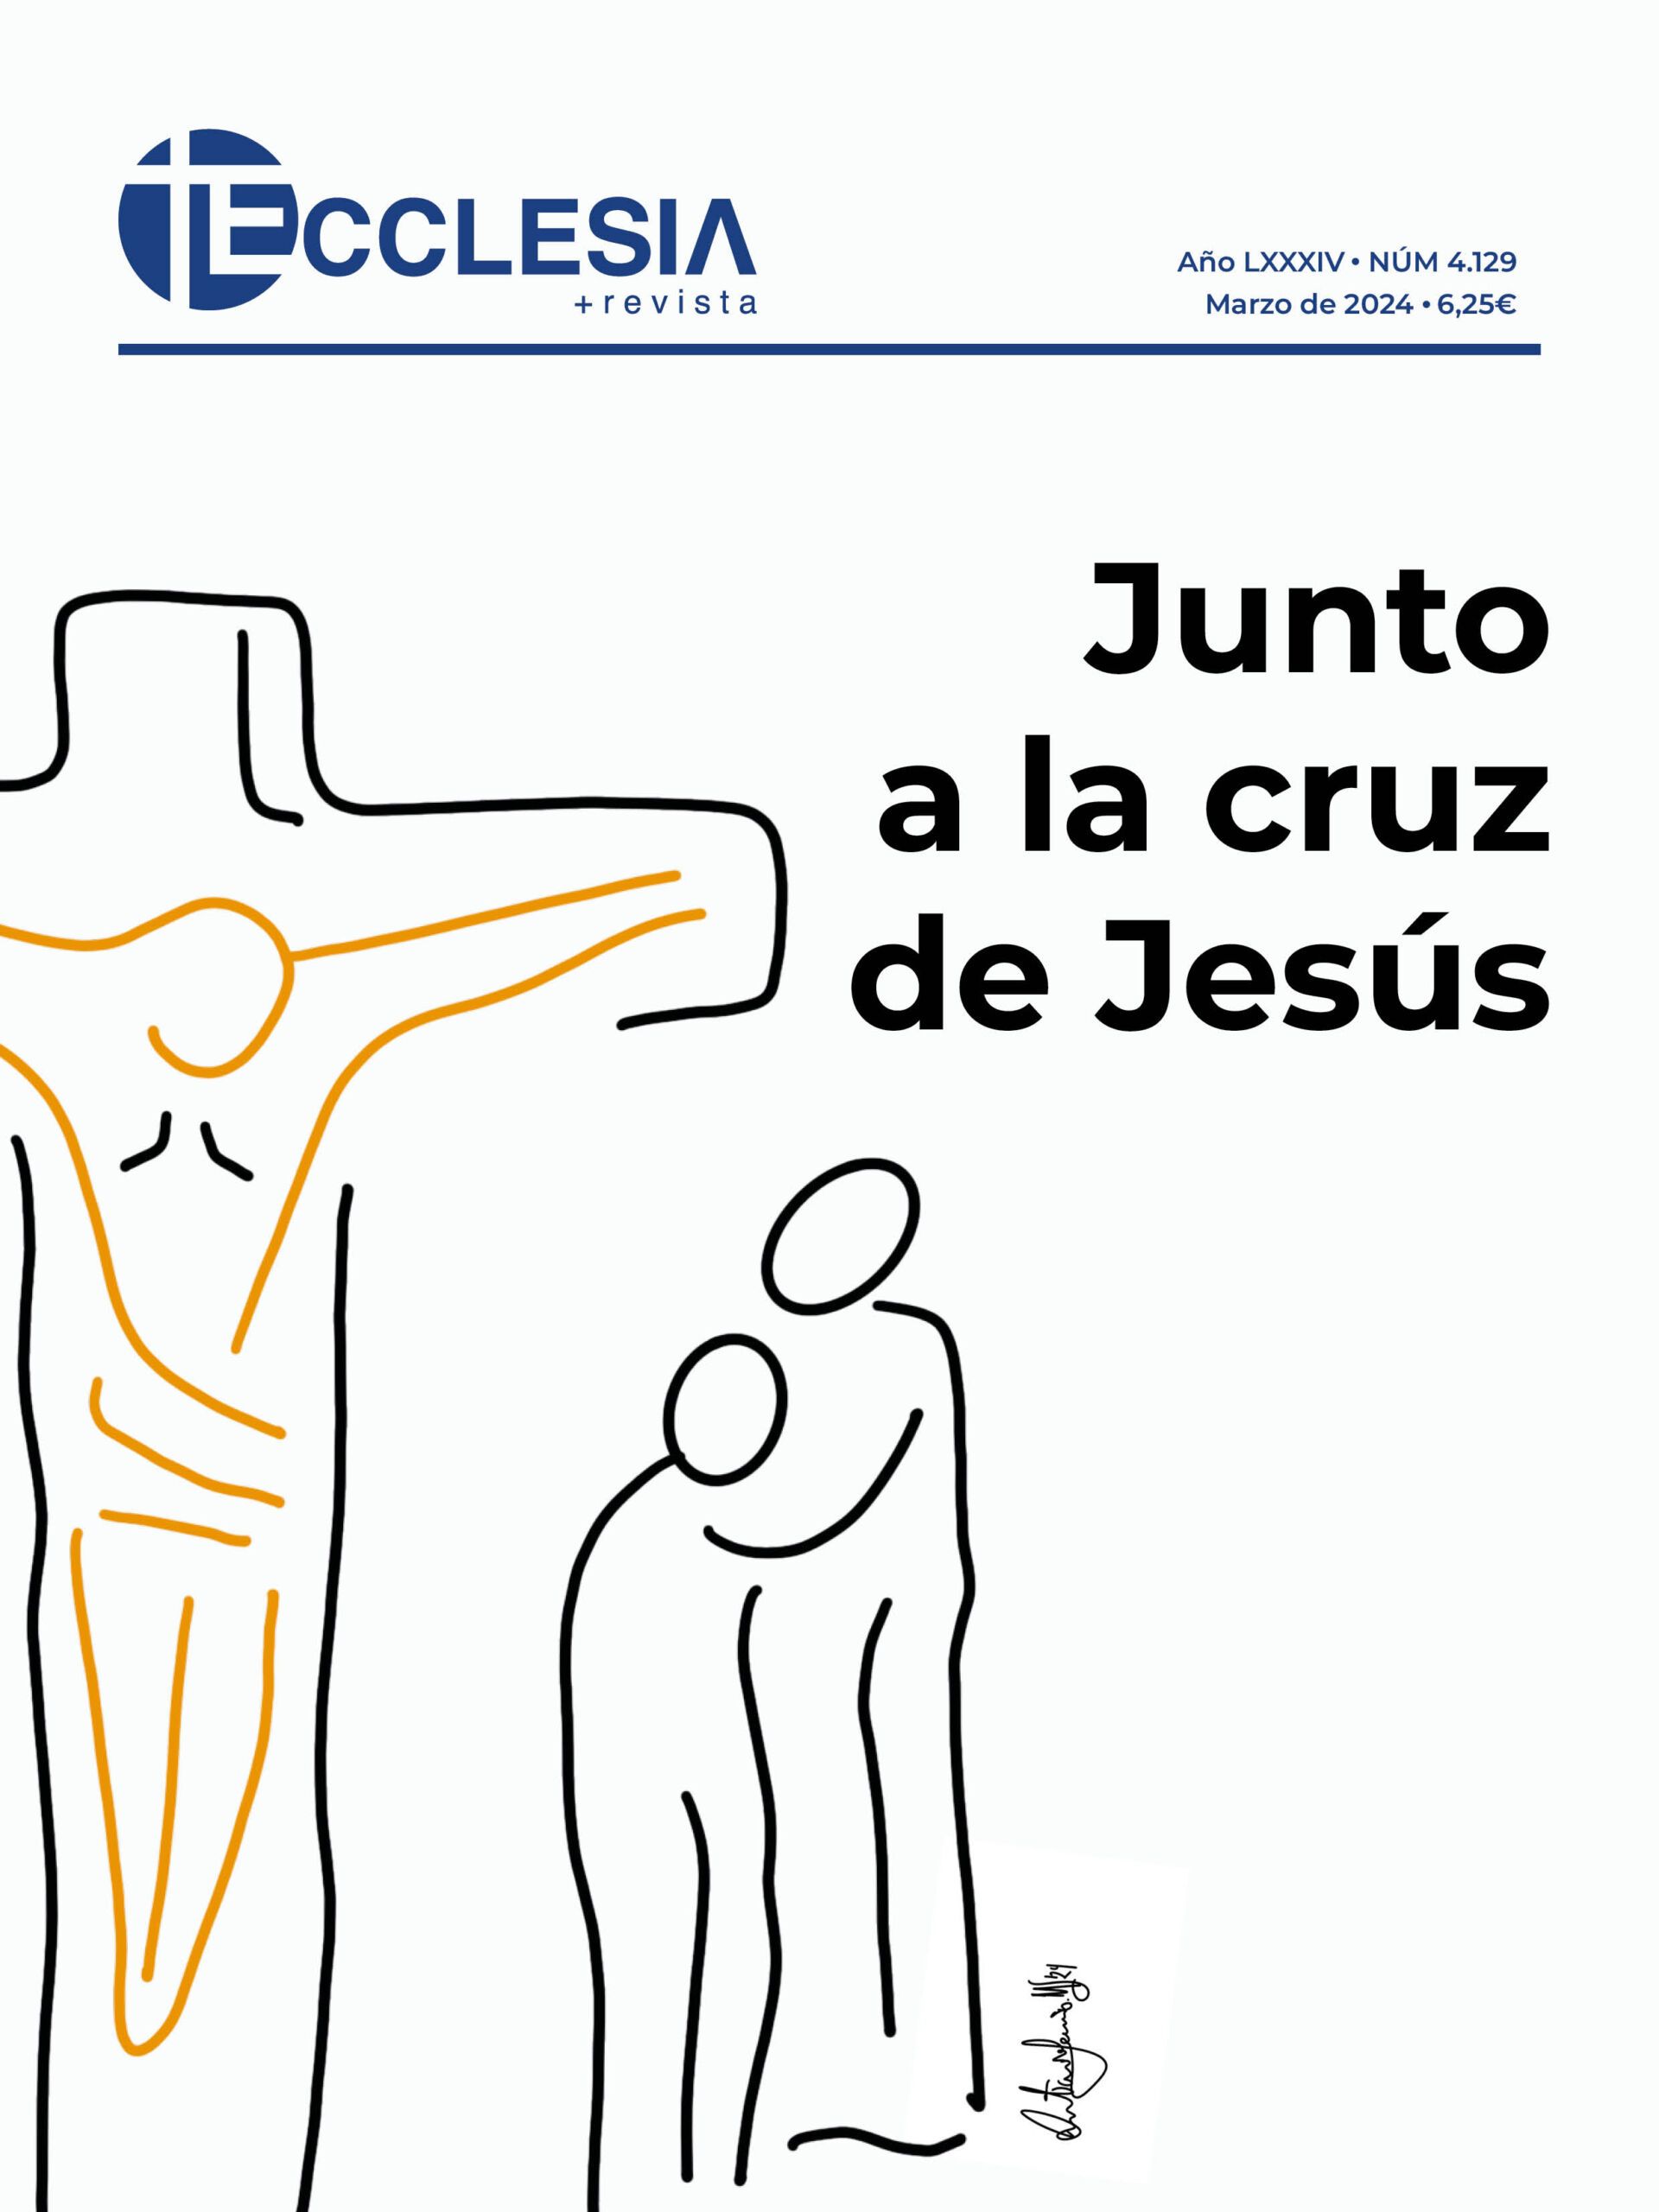 www.revistaecclesia.com